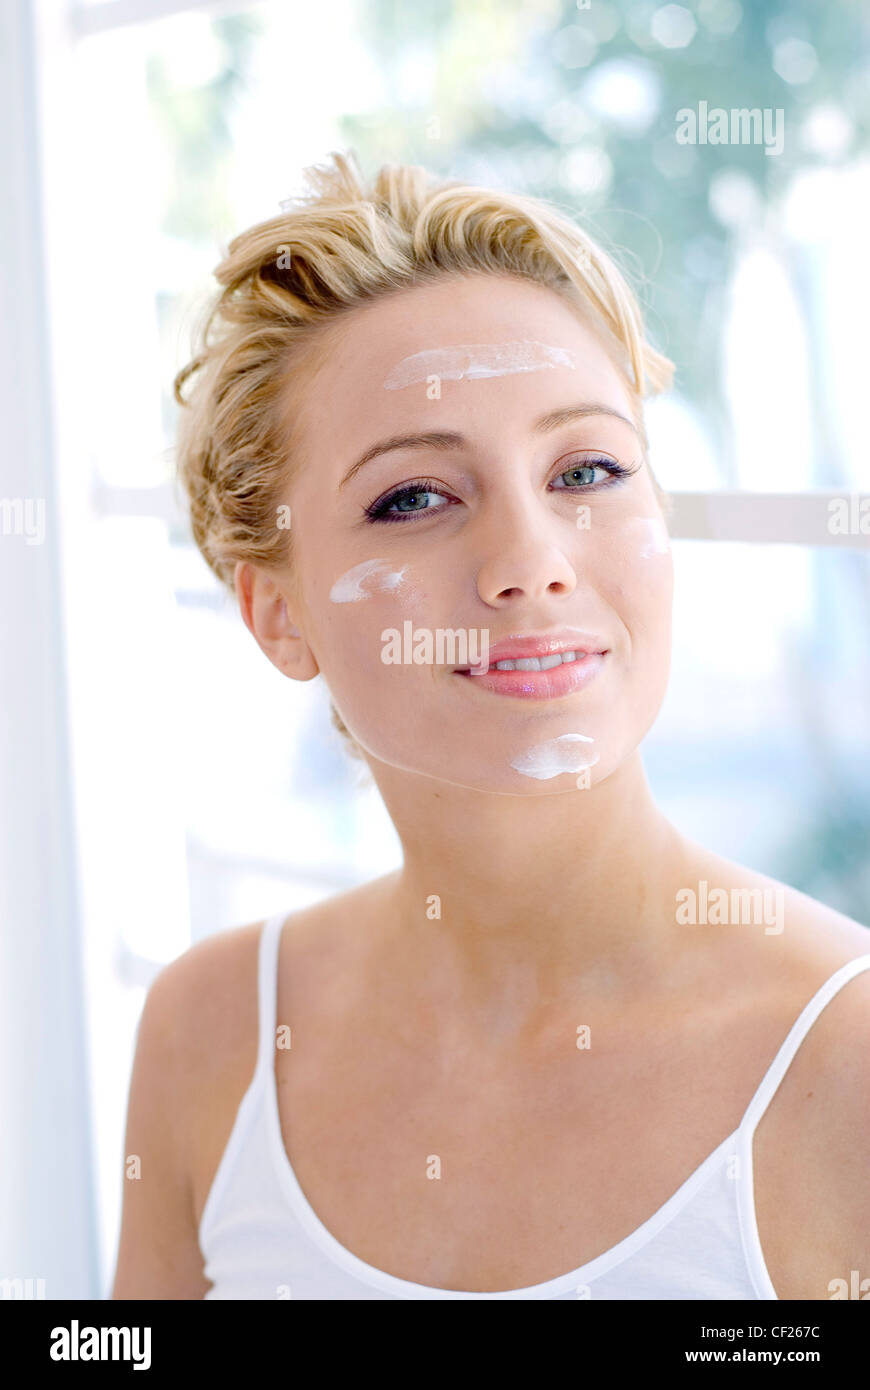 Weibliche blonde Haare tragen weiße Hemdchen Blobs Creme auf Stirn, Wangen und Kinn auf Kamera Lächeln zeigt Zähne Stockfoto